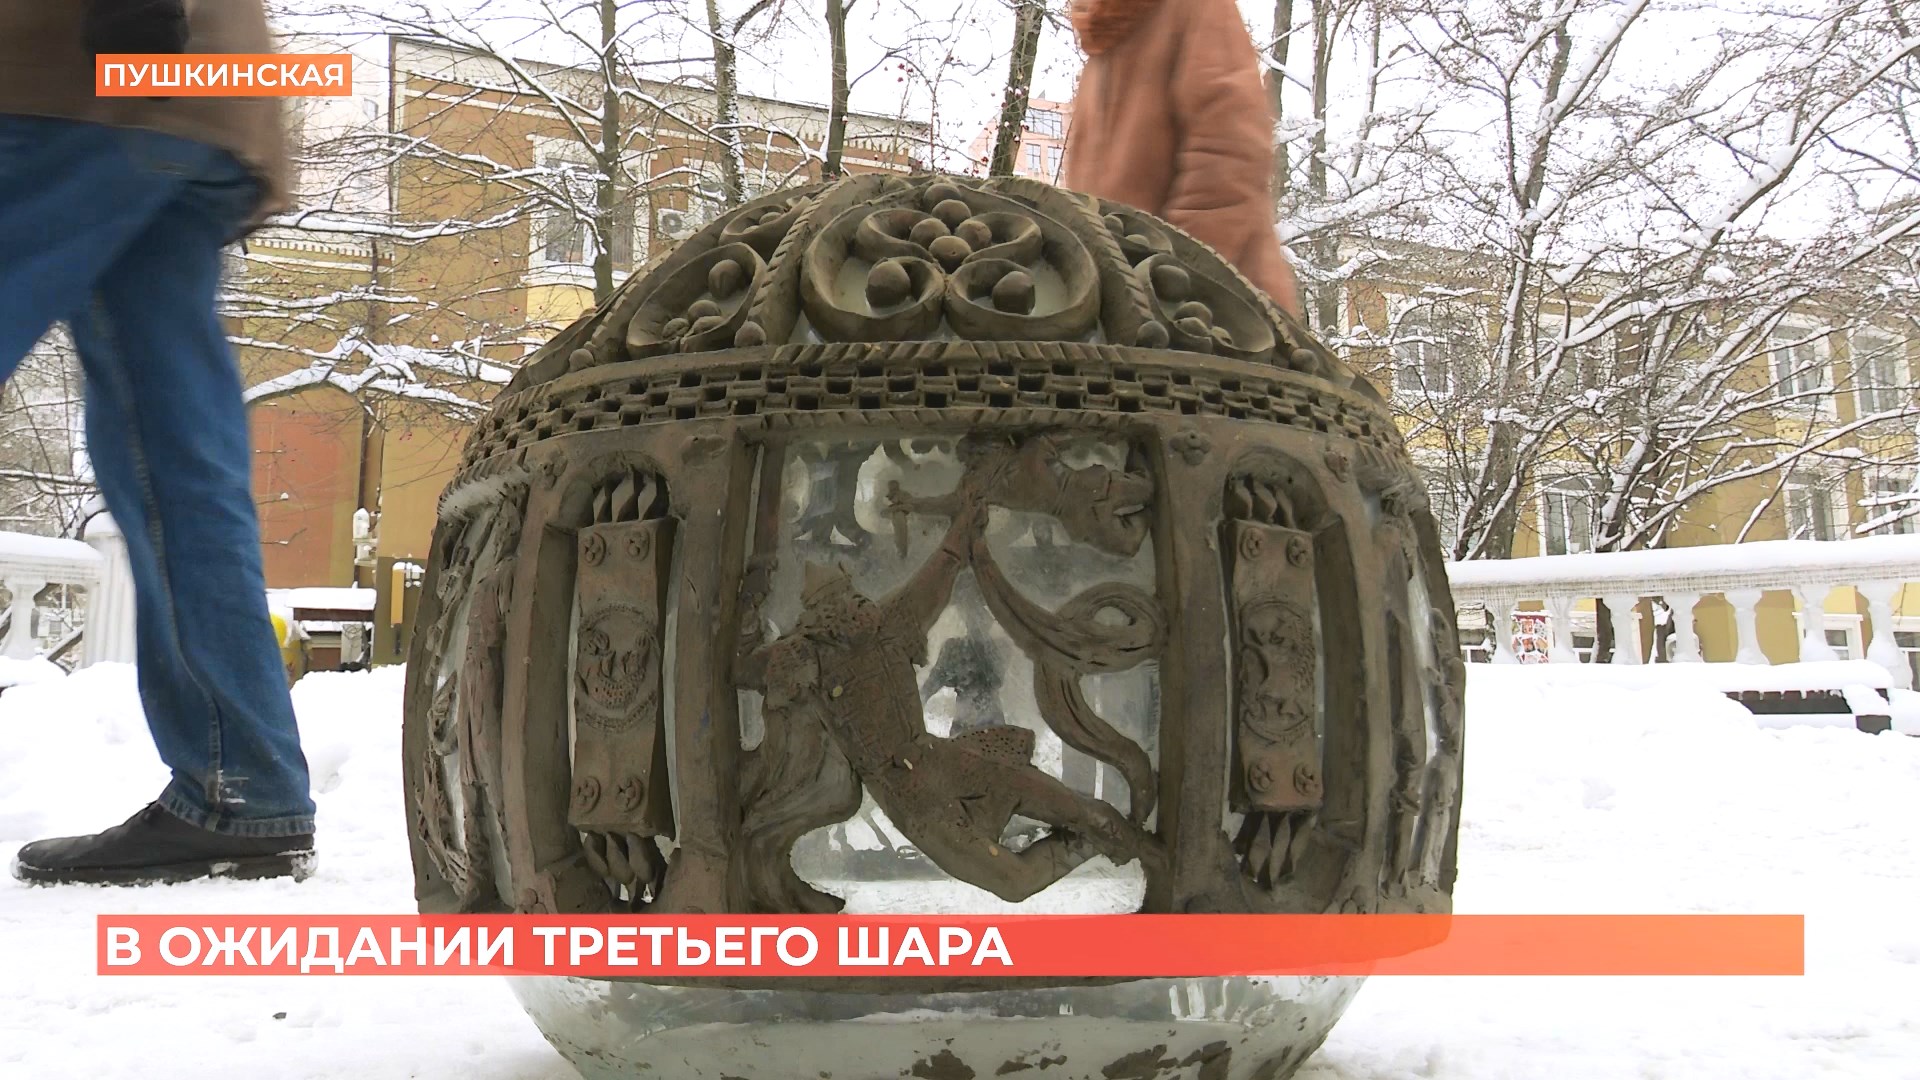 На Пушкинской может появиться третий шар: вдова скульптора Скнарина обратилась к властям с инициативой